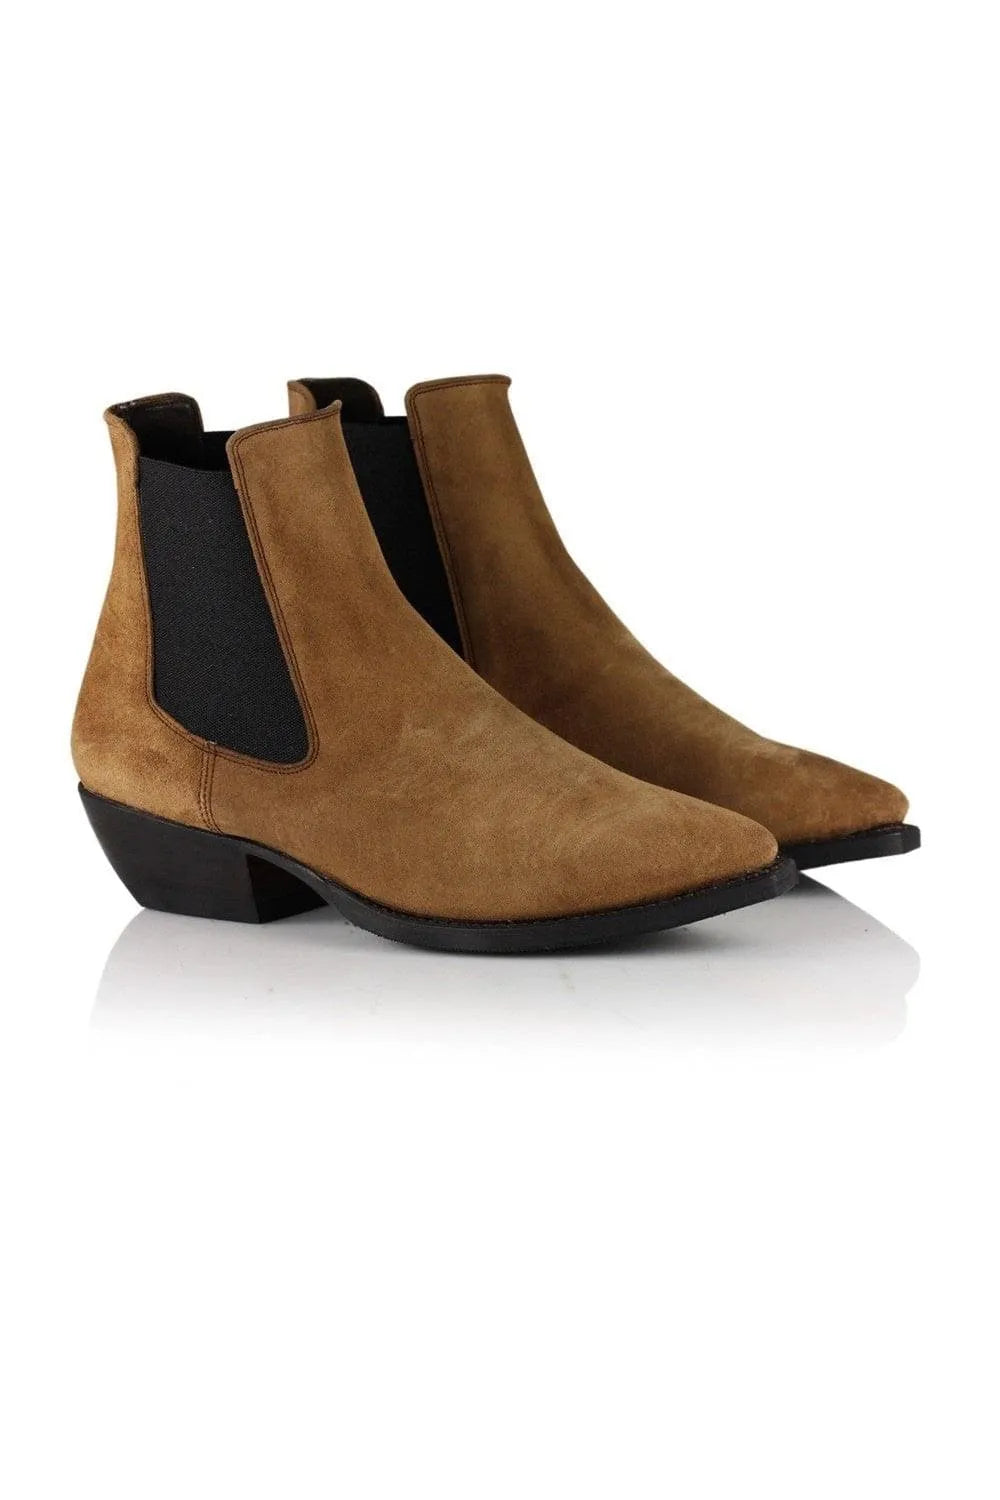 SHOP ankelstøvler til kvinder | Cordova Boots, brun – Cassandra